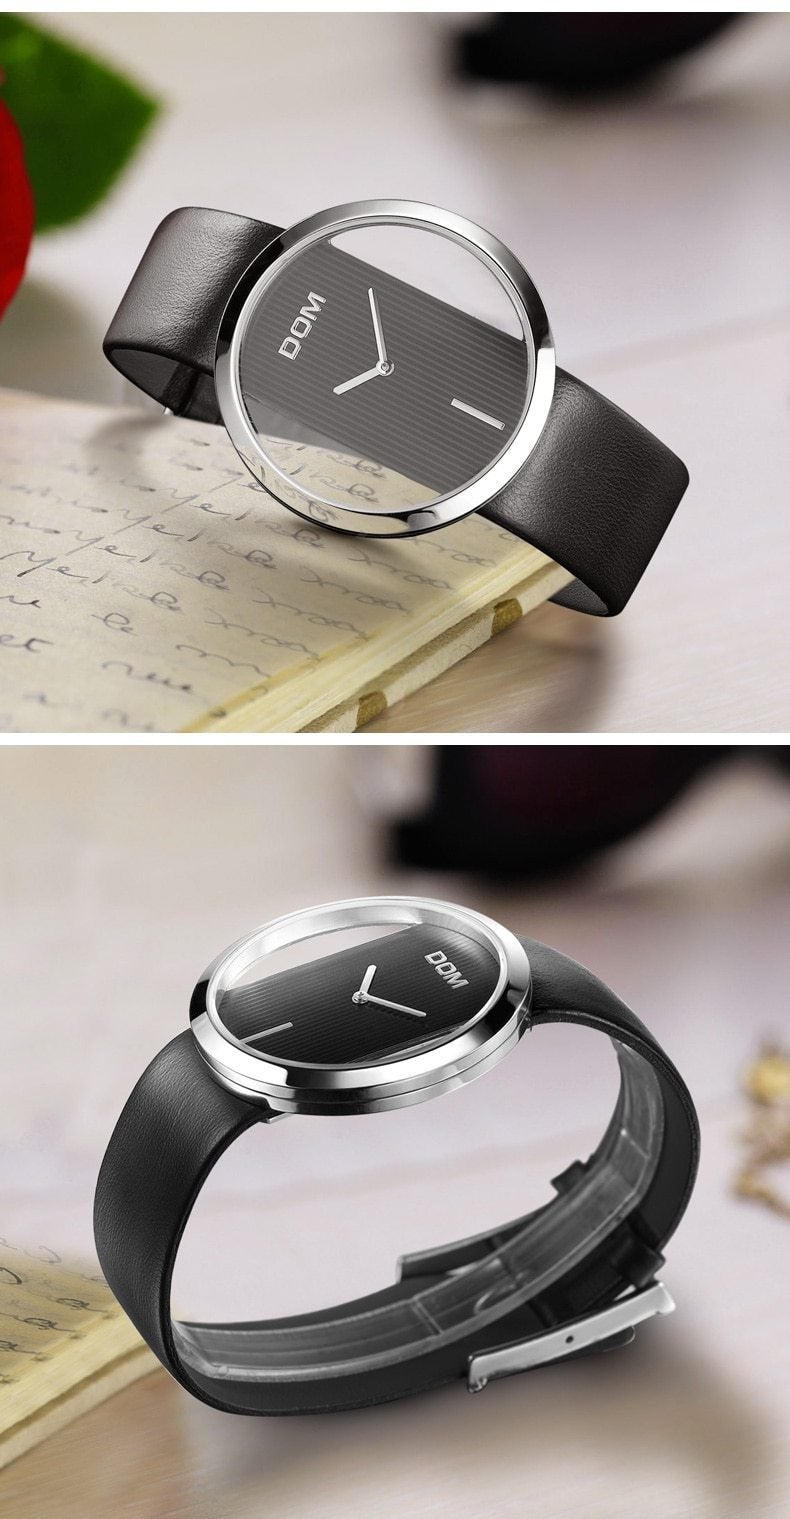 Dom - watch - Quartz Watches, women, women's watches - Stigma Watches - stigmawatches.com